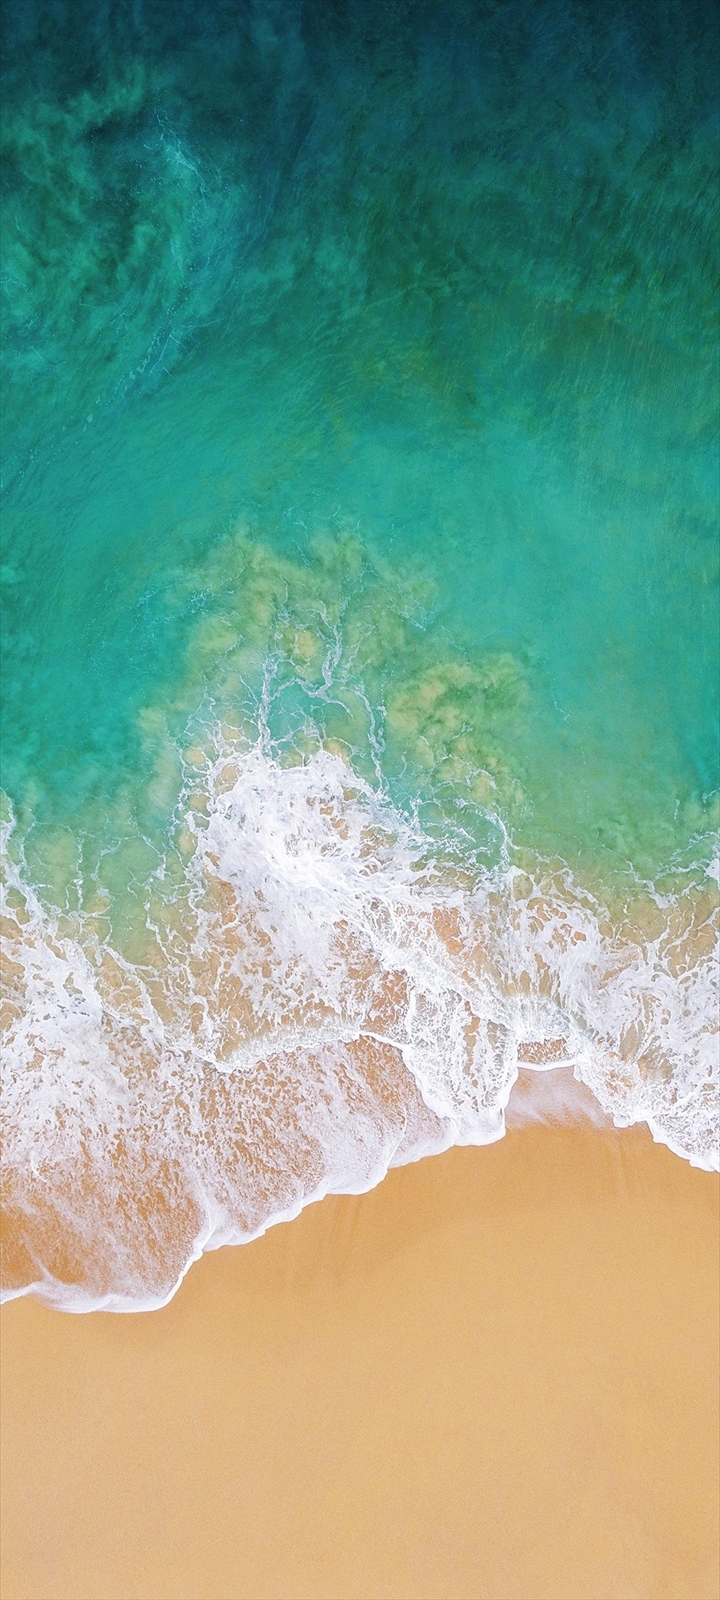 俯瞰視点 綺麗な海と浜辺 Galaxy A32 5g Androidスマホ壁紙 待ち受け スマラン